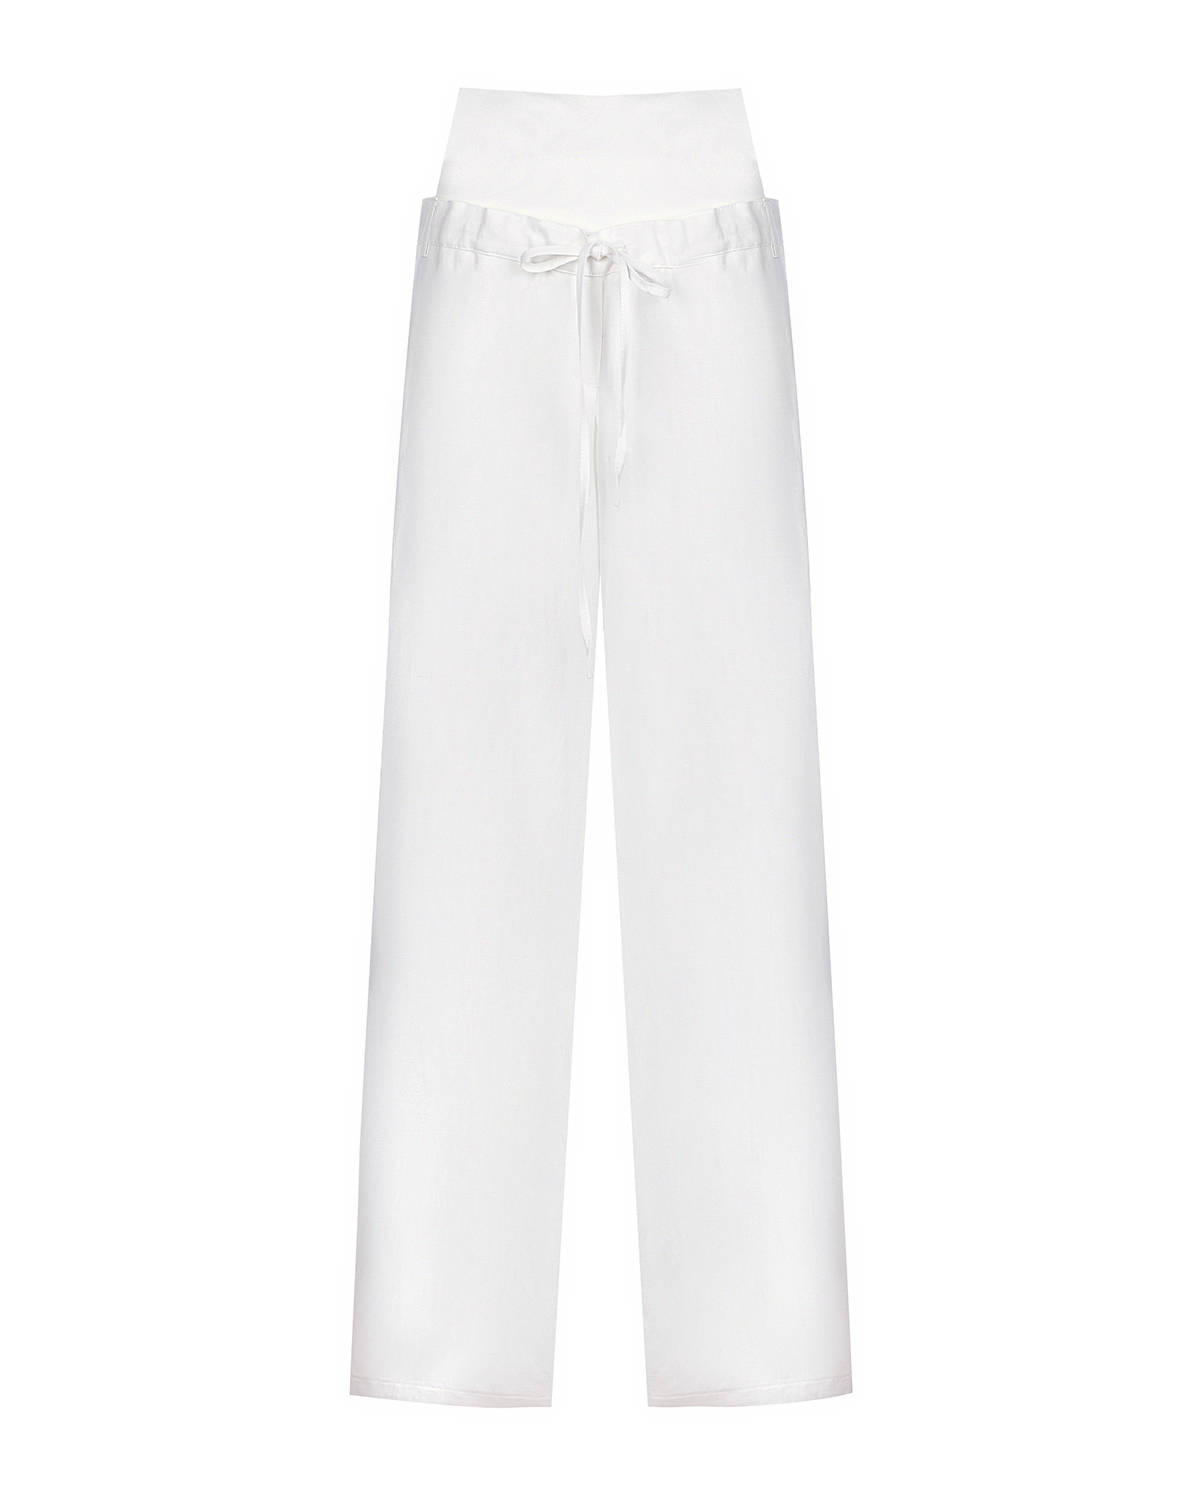 Белые льняные брюки для беременных Pietro Brunelli, размер 40, цвет белый